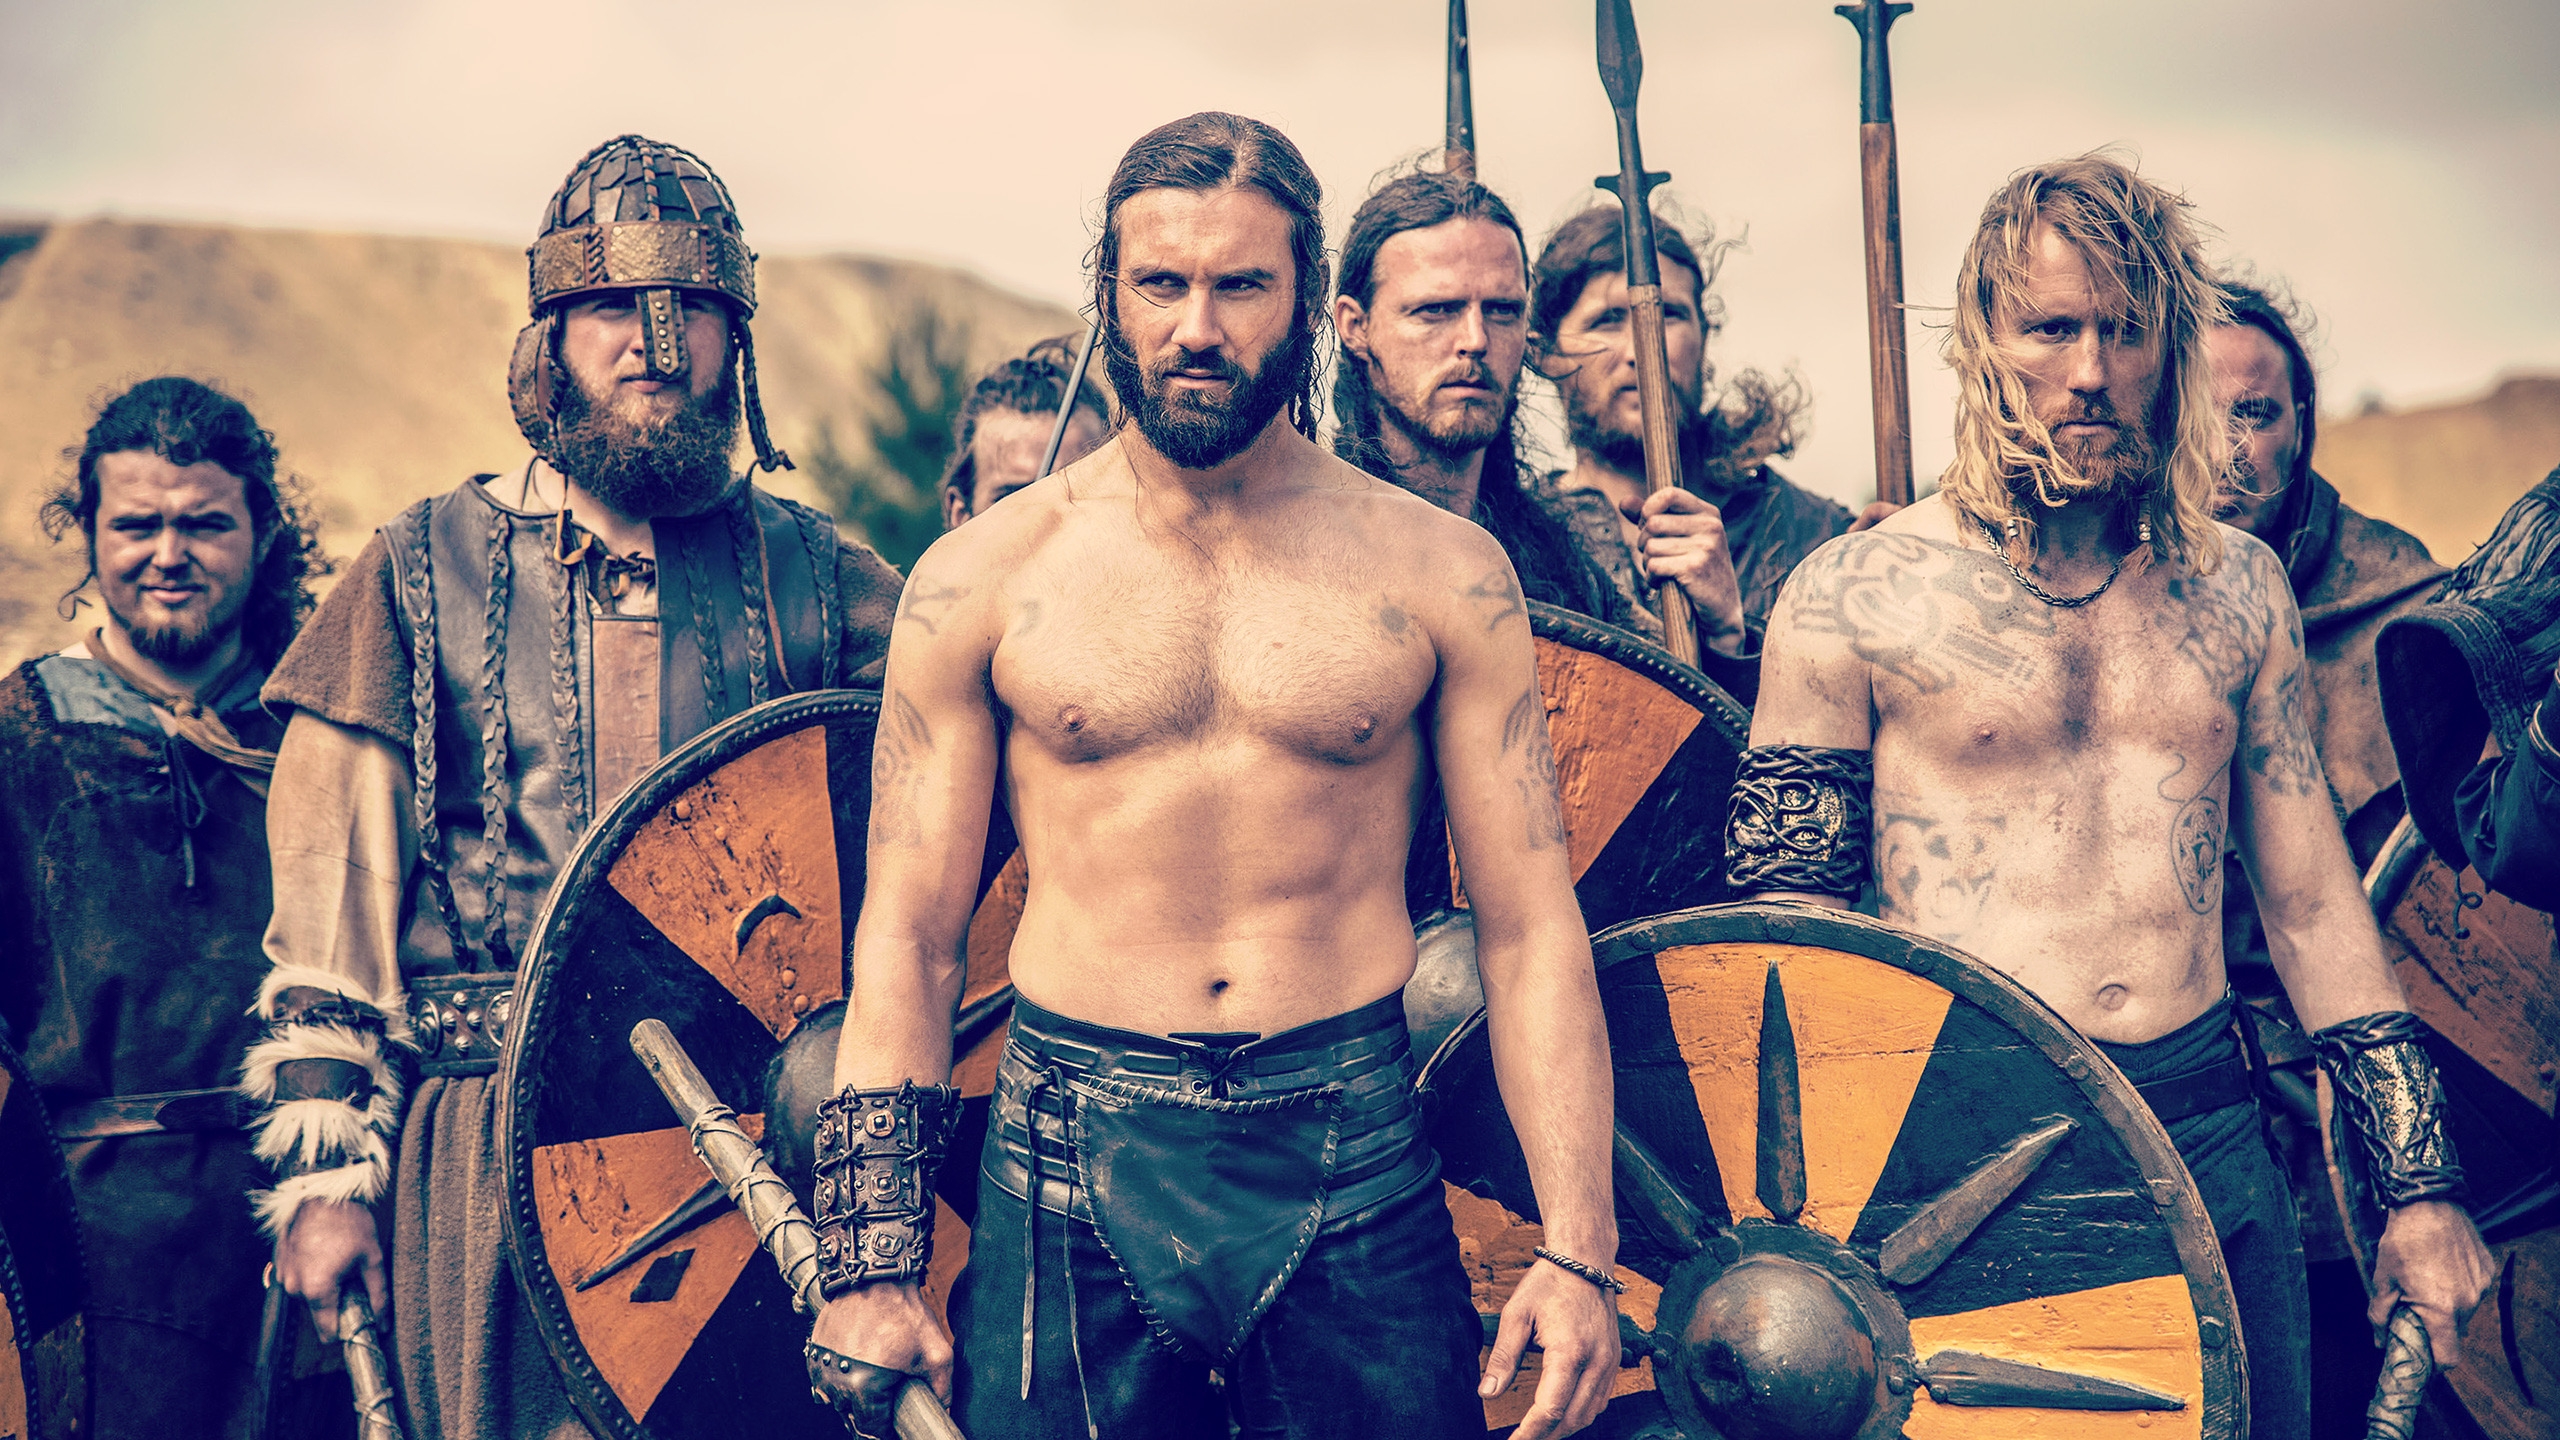 Vikings Season 2 Scene for 2560x1440 HDTV resolution